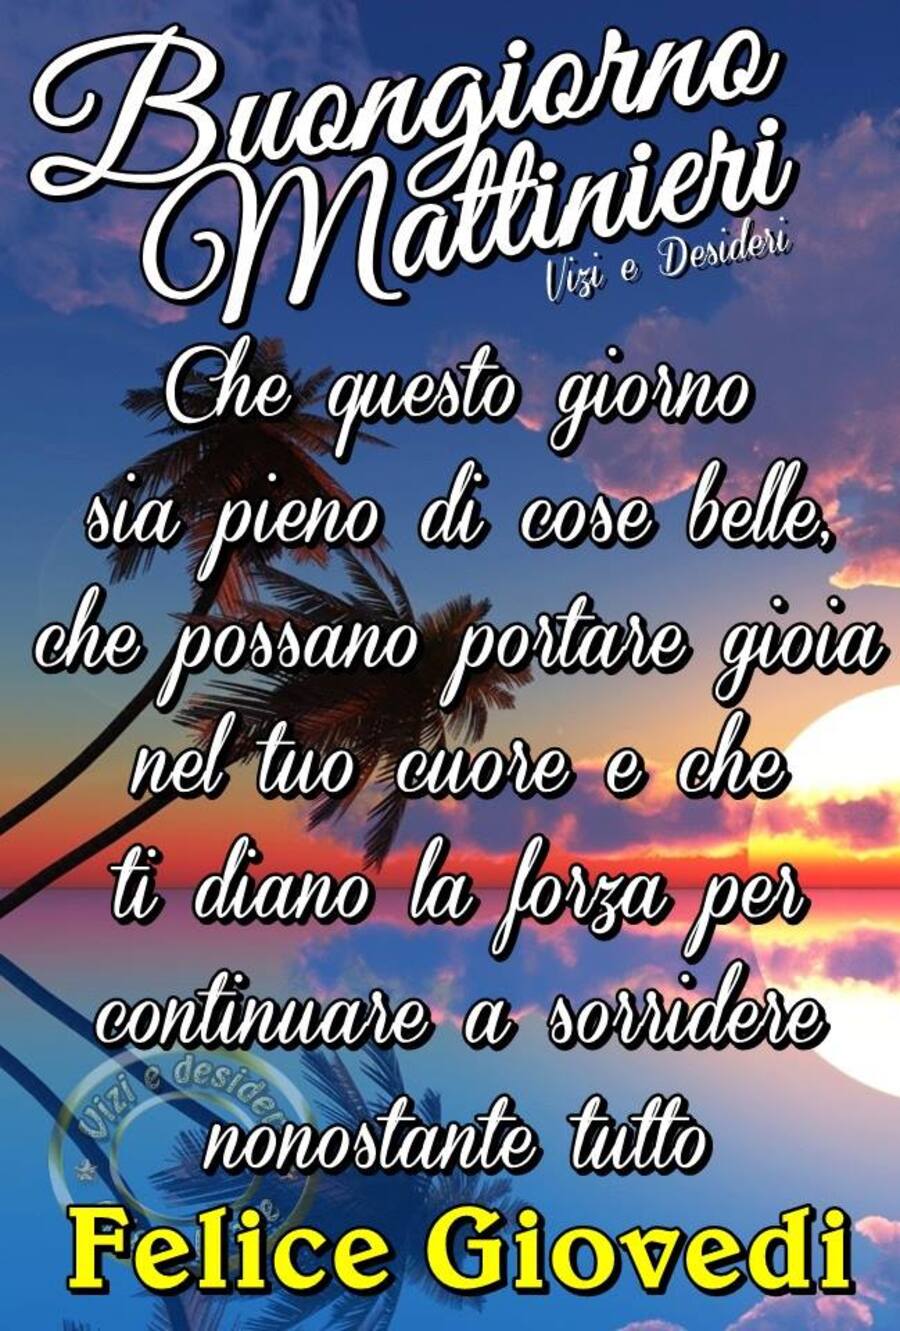 "Buongiorno Mattinieri, che questo giorno sia pieno di cose belle, che possano portare gioia nel tuo cuore e che ti diano la forza per continuare a sorridere nonostante tutto. Buon Giovedì"